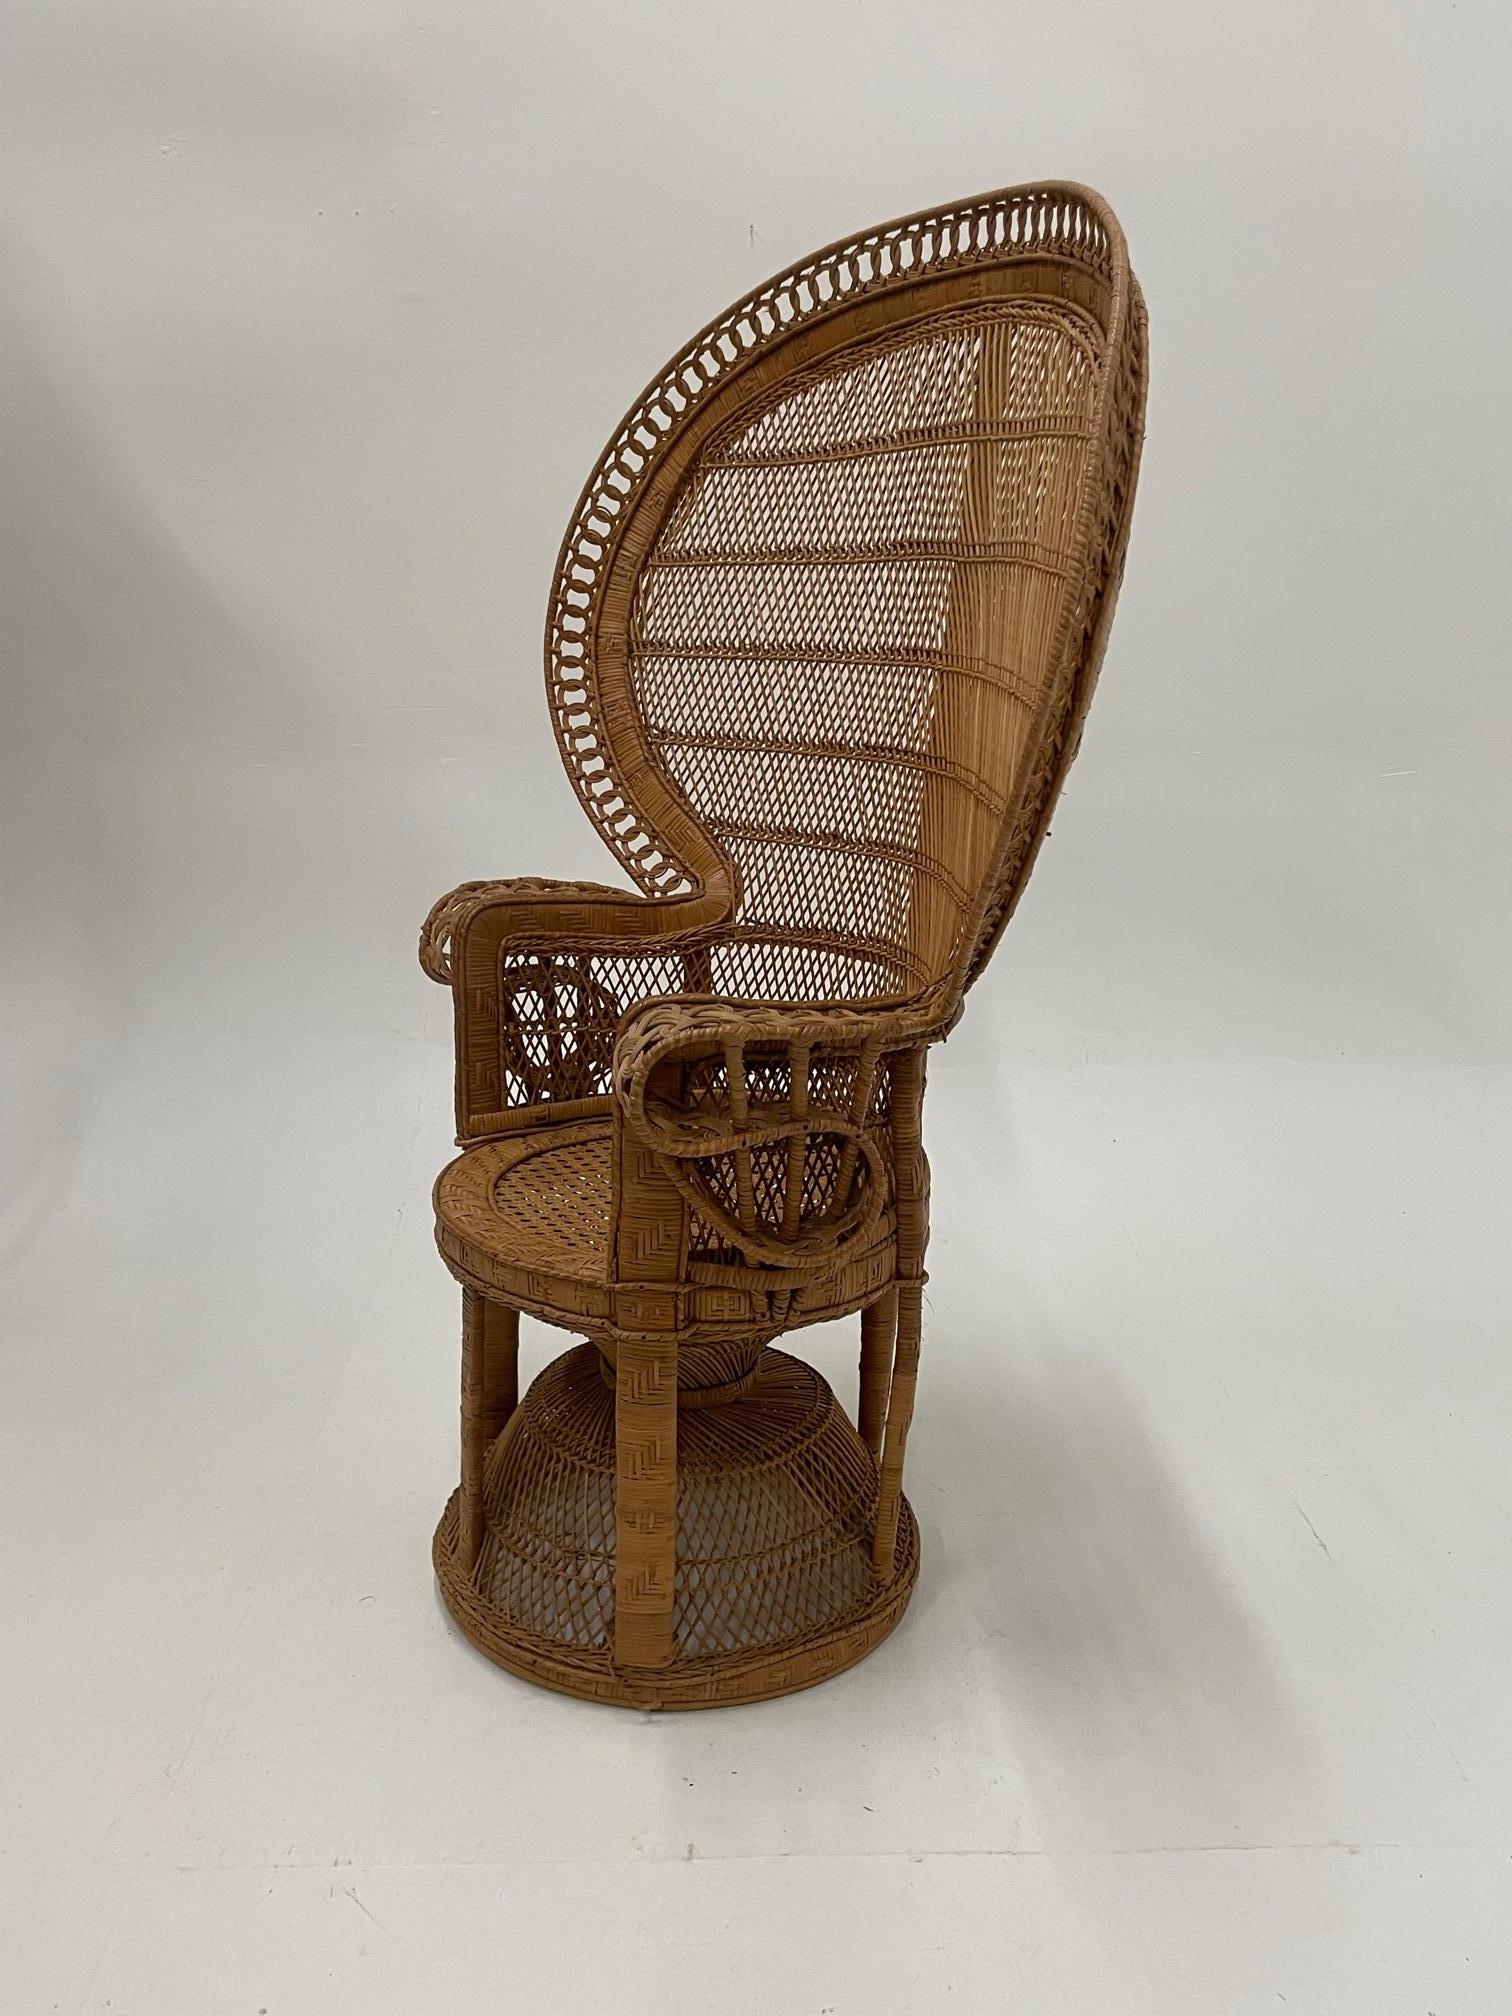 Une chaise en rotin en forme de paon qui attire l'attention par sa forme et son style iconiques.
Mesure : Hauteur des bras 29.